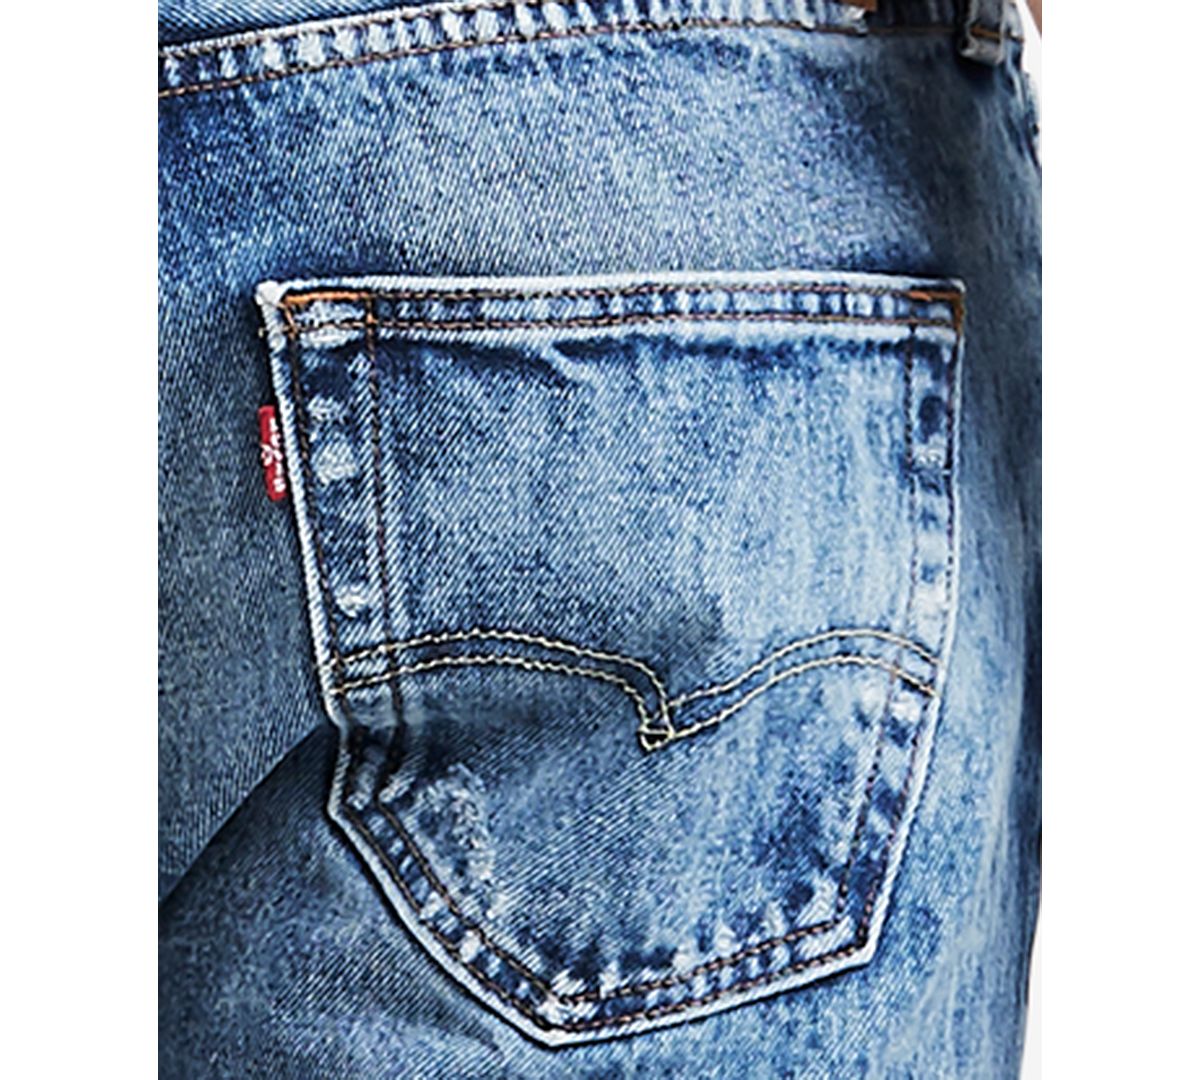 Levi's 501 Original Fit Jeans Rinsed Indigo